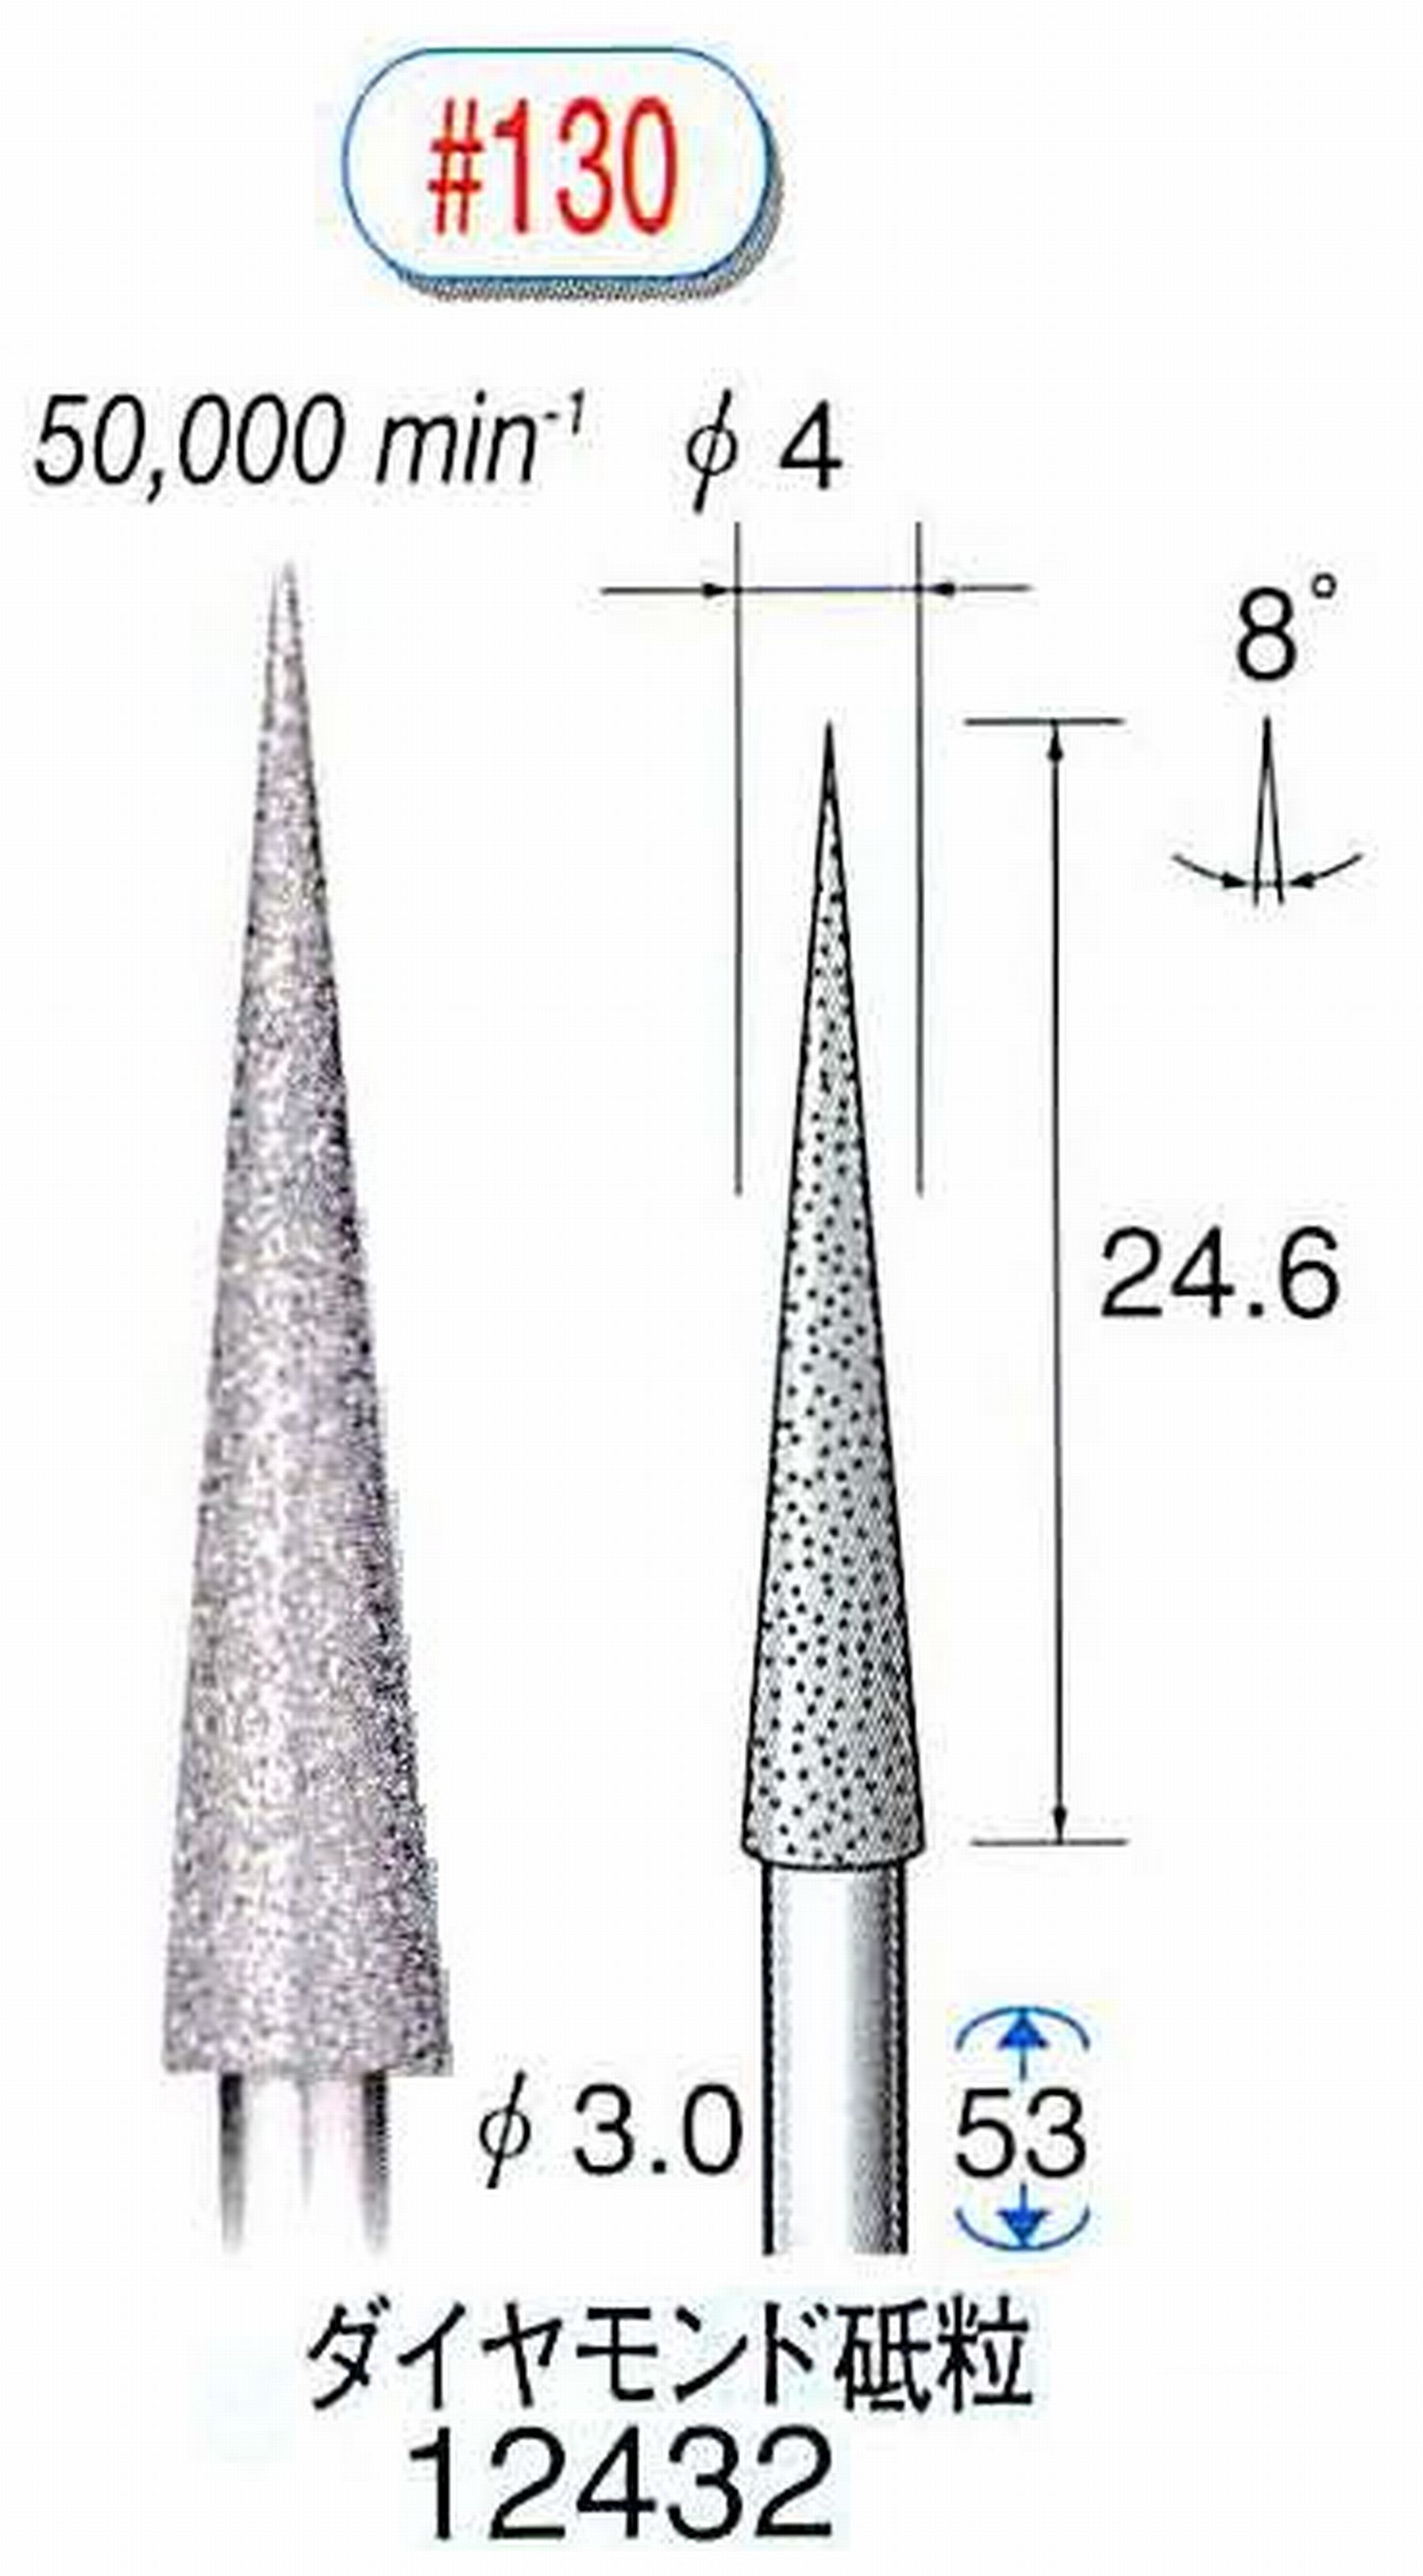 ナカニシ/NAKANISHI 電着ダイヤモンド ダイヤモンド砥粒 軸径(シャンク)φ3.0mm 12432